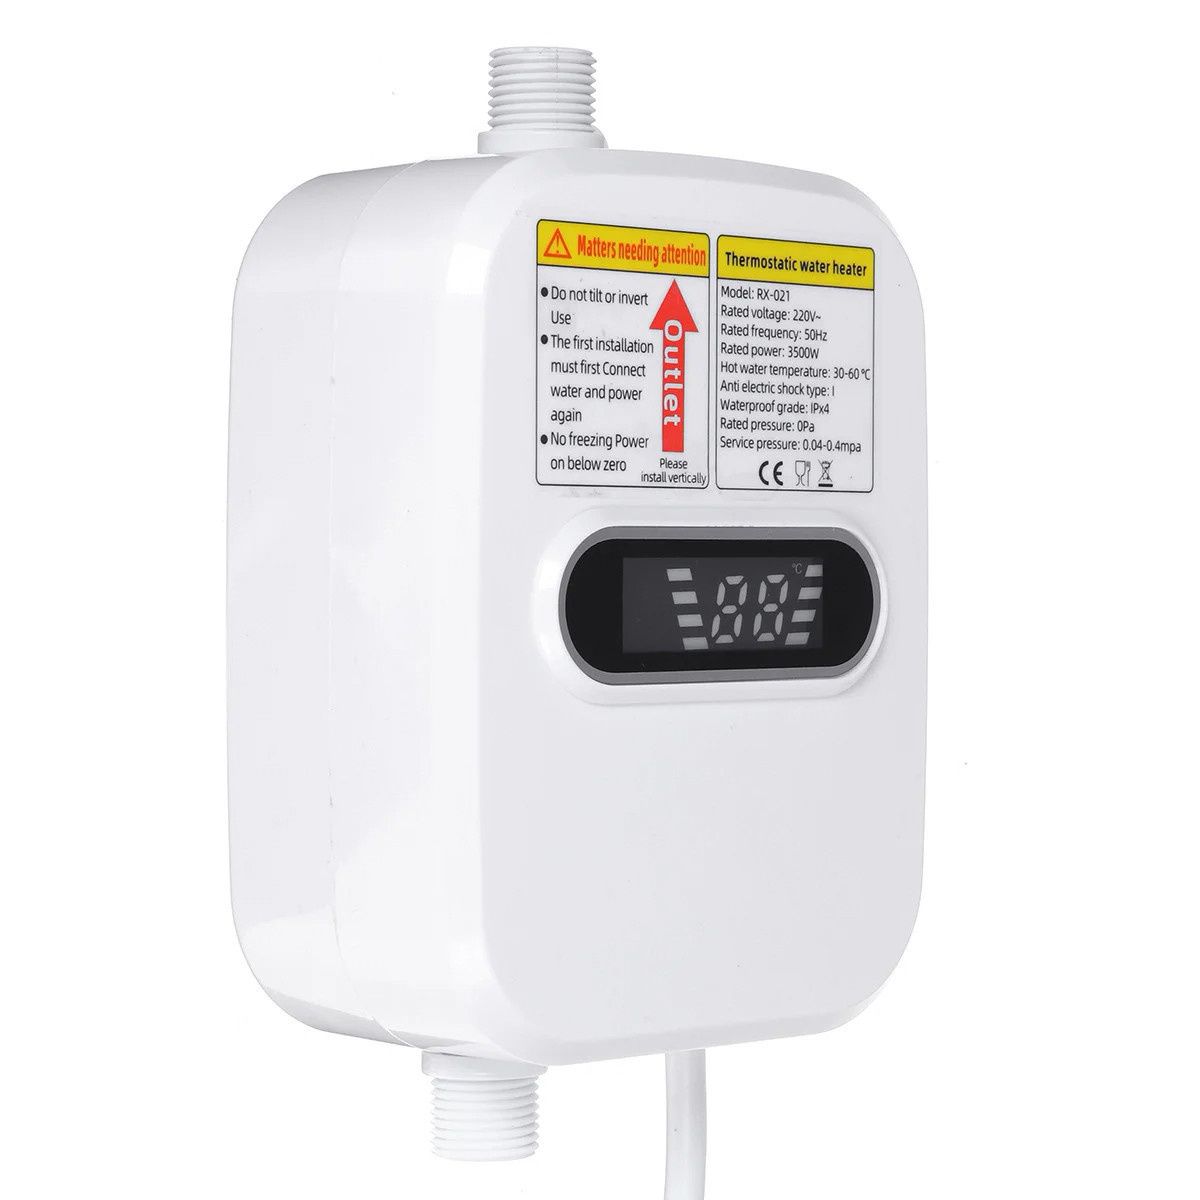 Электрический термостатичный водонагреватель-душ с краном TEMMAX RX-02